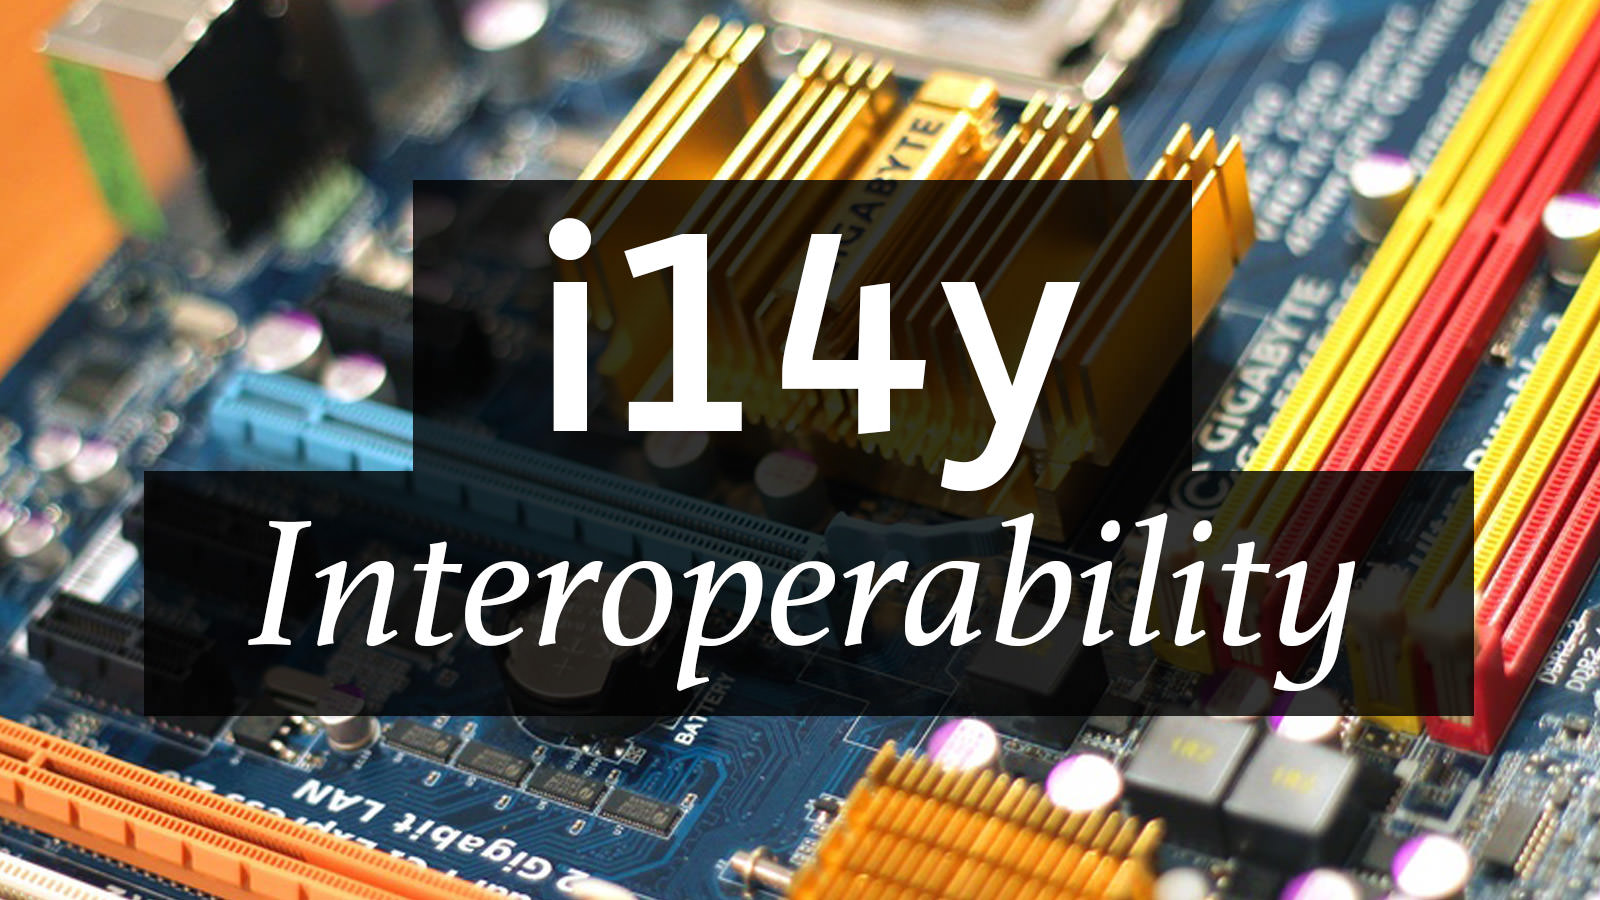 Numeronym for Interoperability